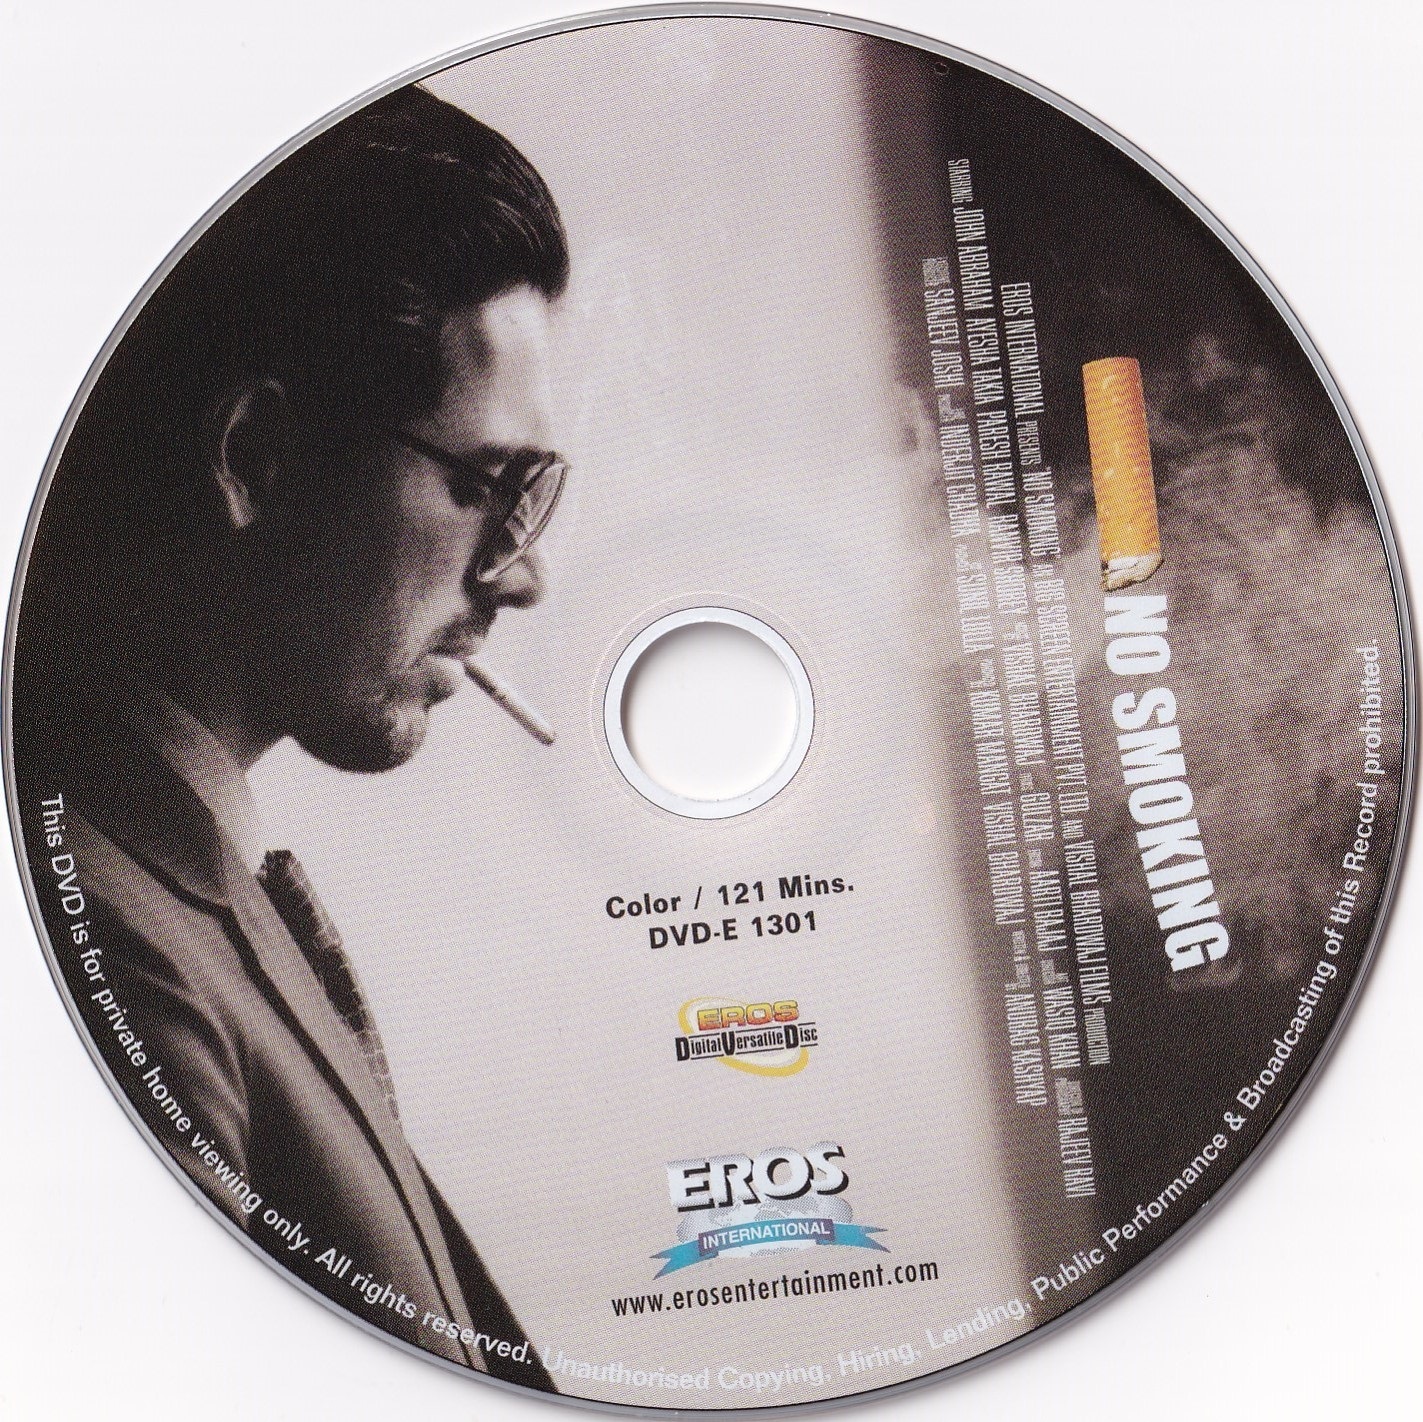 No Smoking (2007)